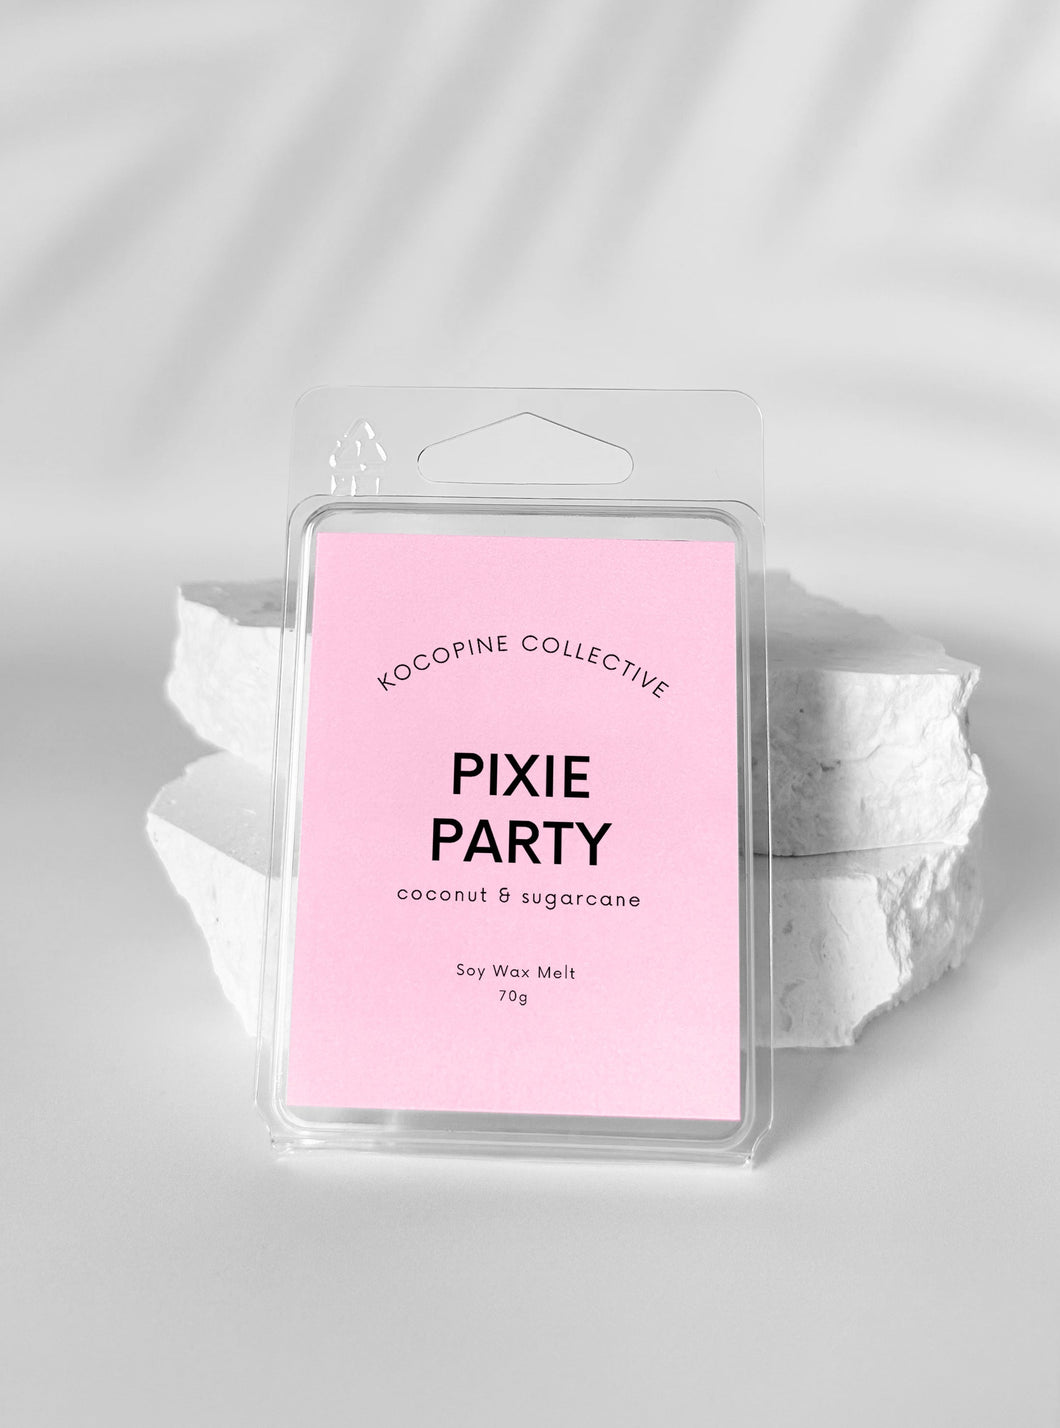 Pixie Party + Sugarcane + Coconut